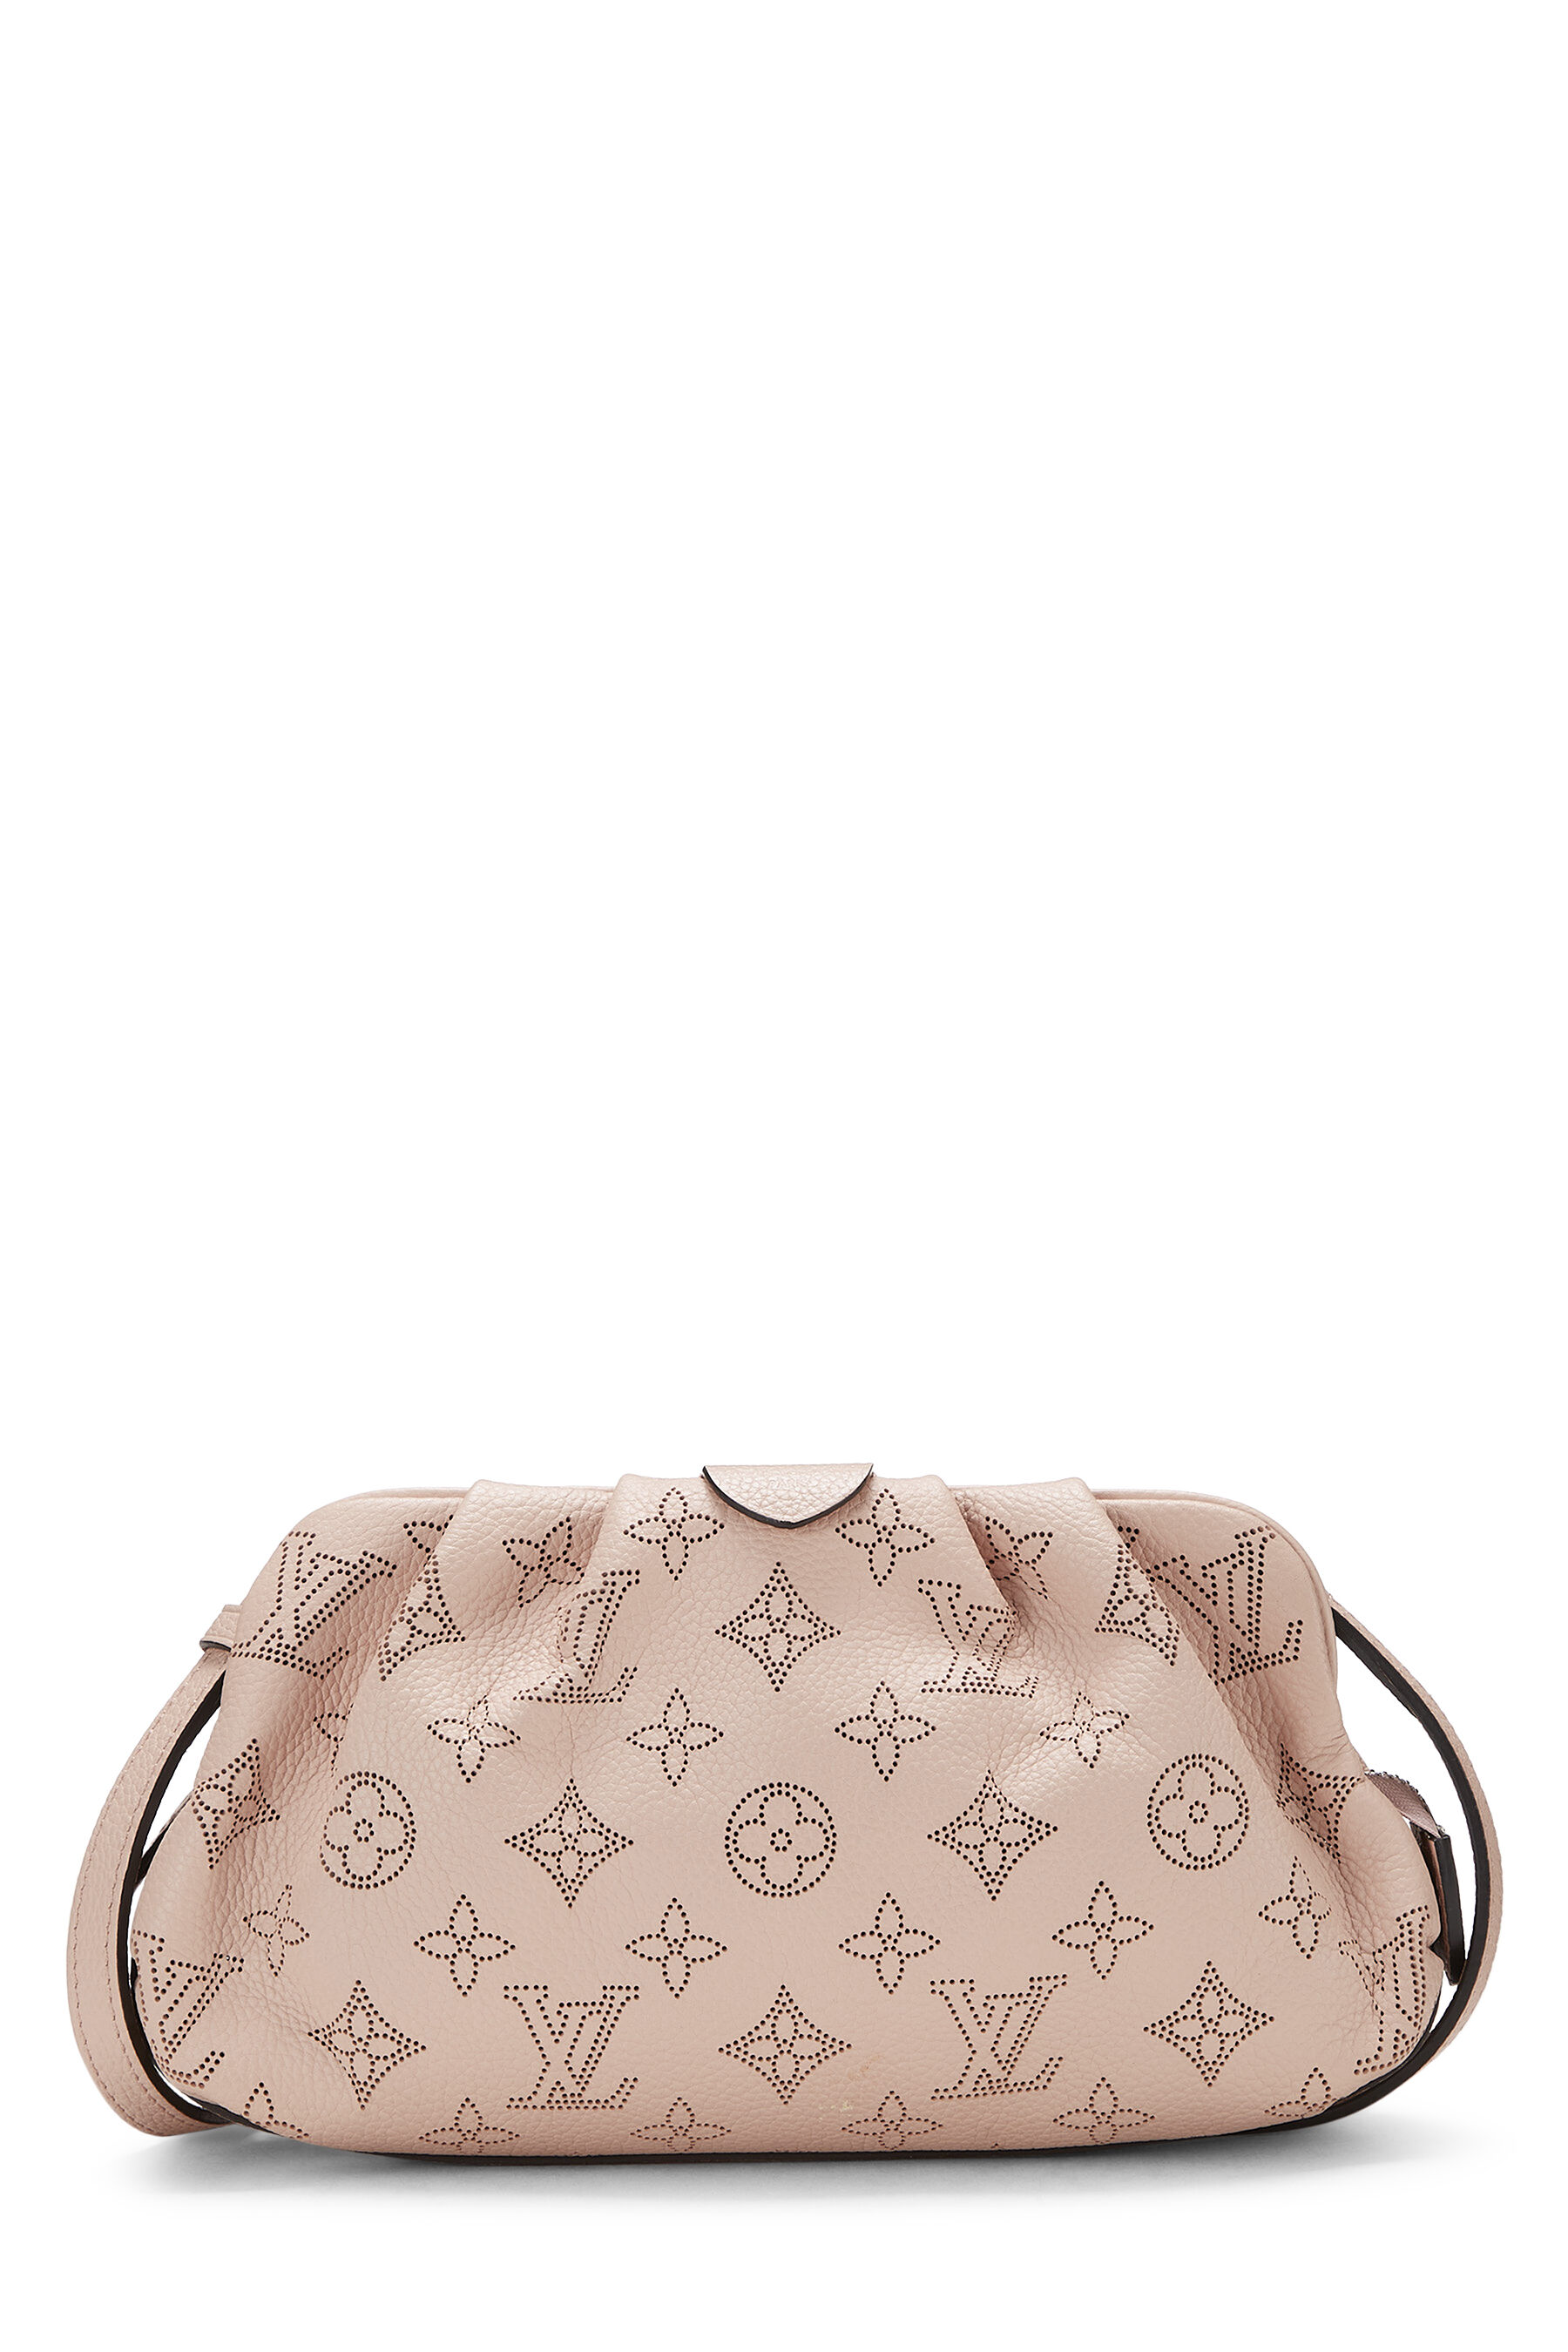 Louis Vuitton Mahina Scala Mini Bag